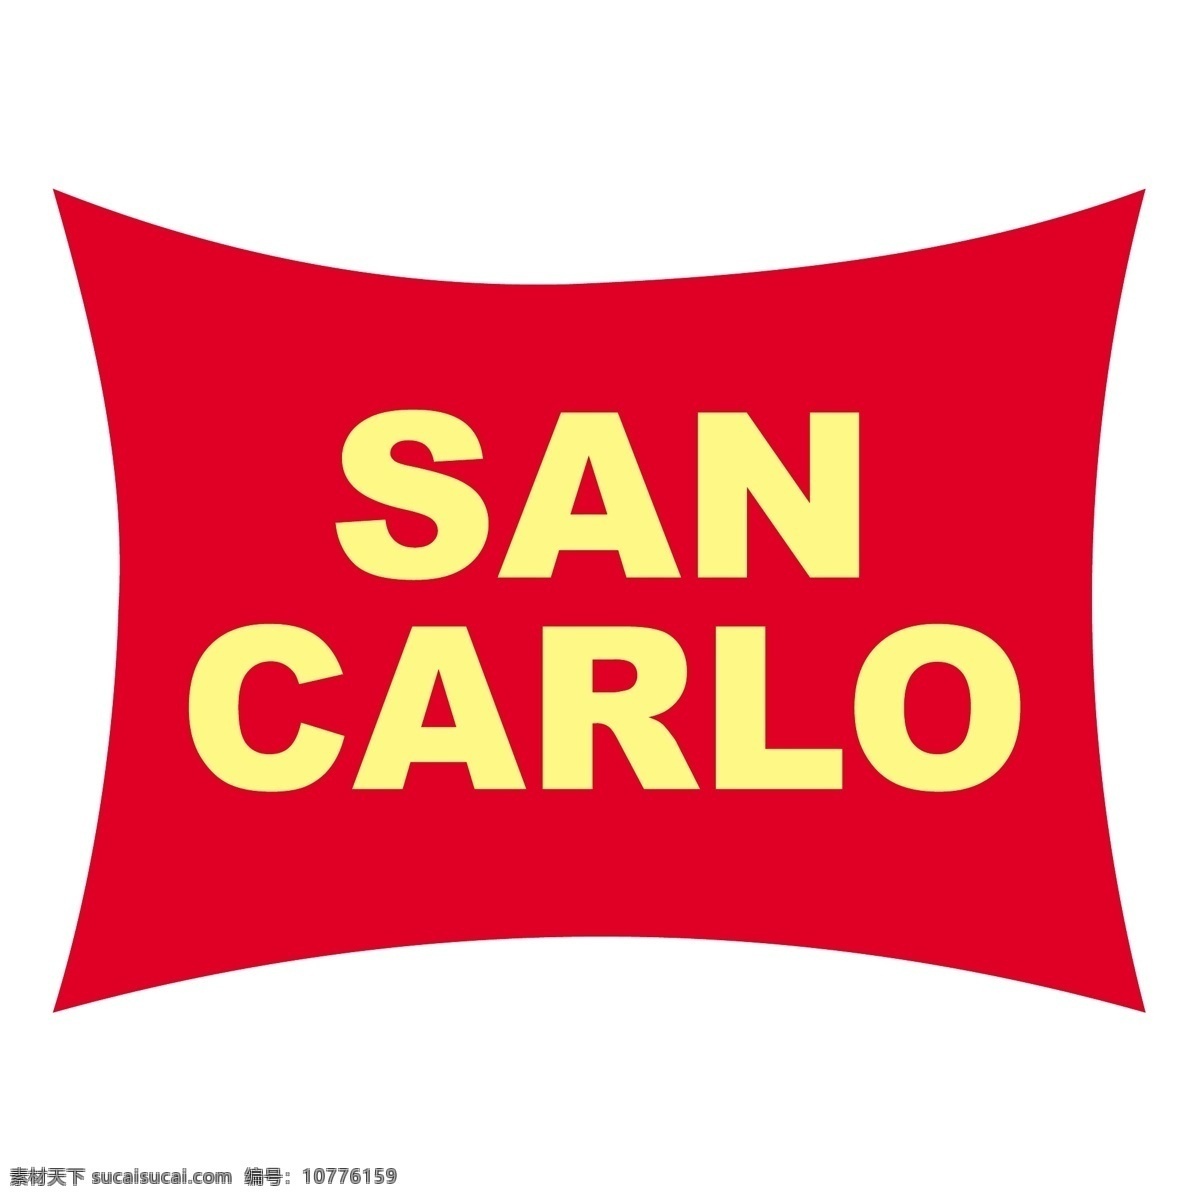 圣卡罗食品 食品 三 san carlo 模拟 蒙特卡罗食品 标识的圣卡罗 圣 矢量 矢量设计三 自由 向量三设计 三艺术 免费 图形 建筑家居